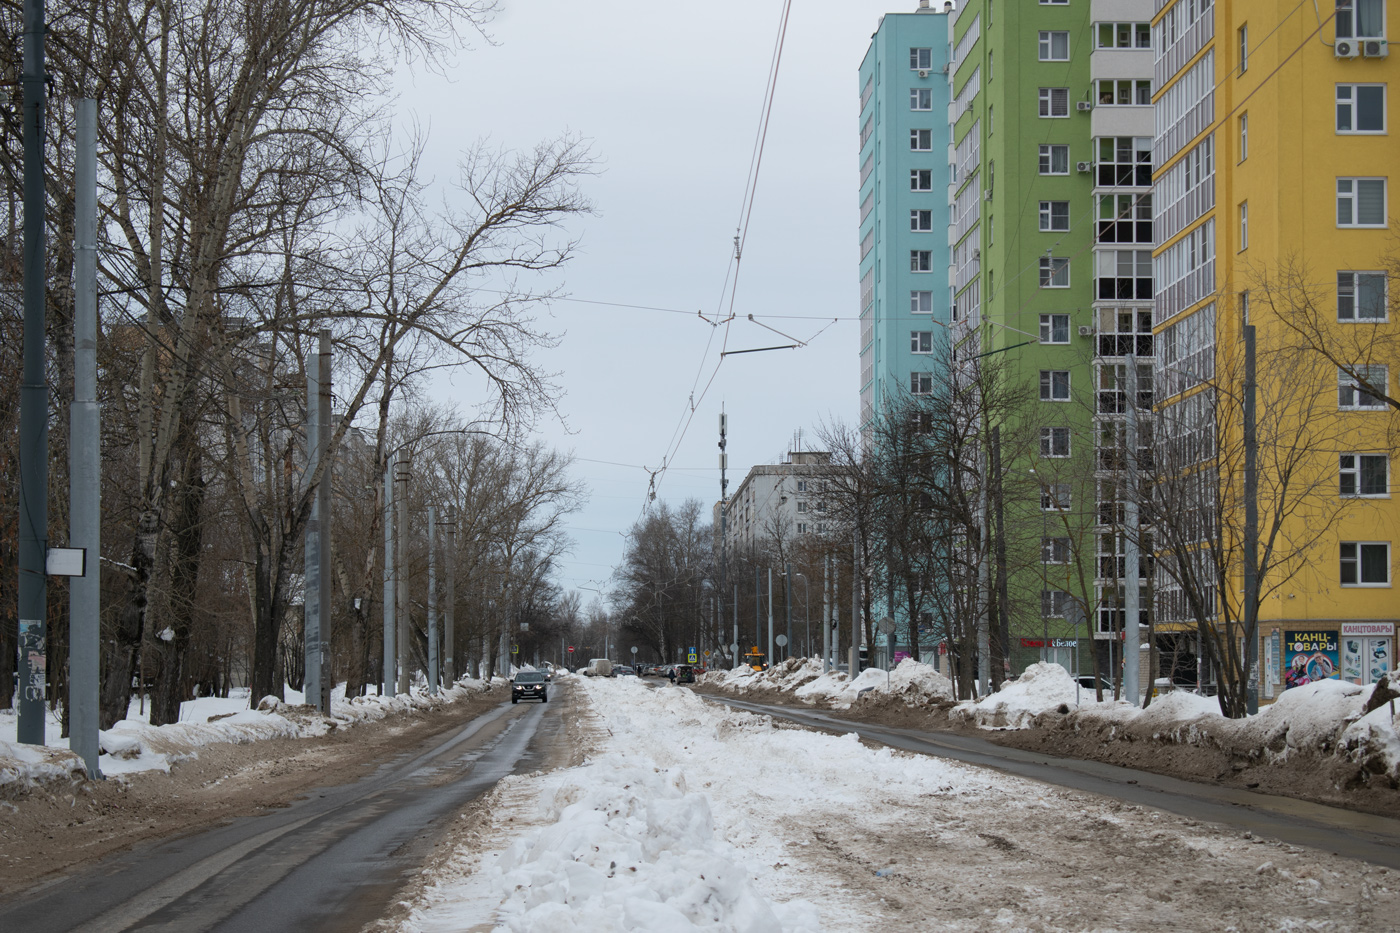 Нижний Новгород — Ремонт трамвайной линии в рамках концессионного соглашения. Этап №2